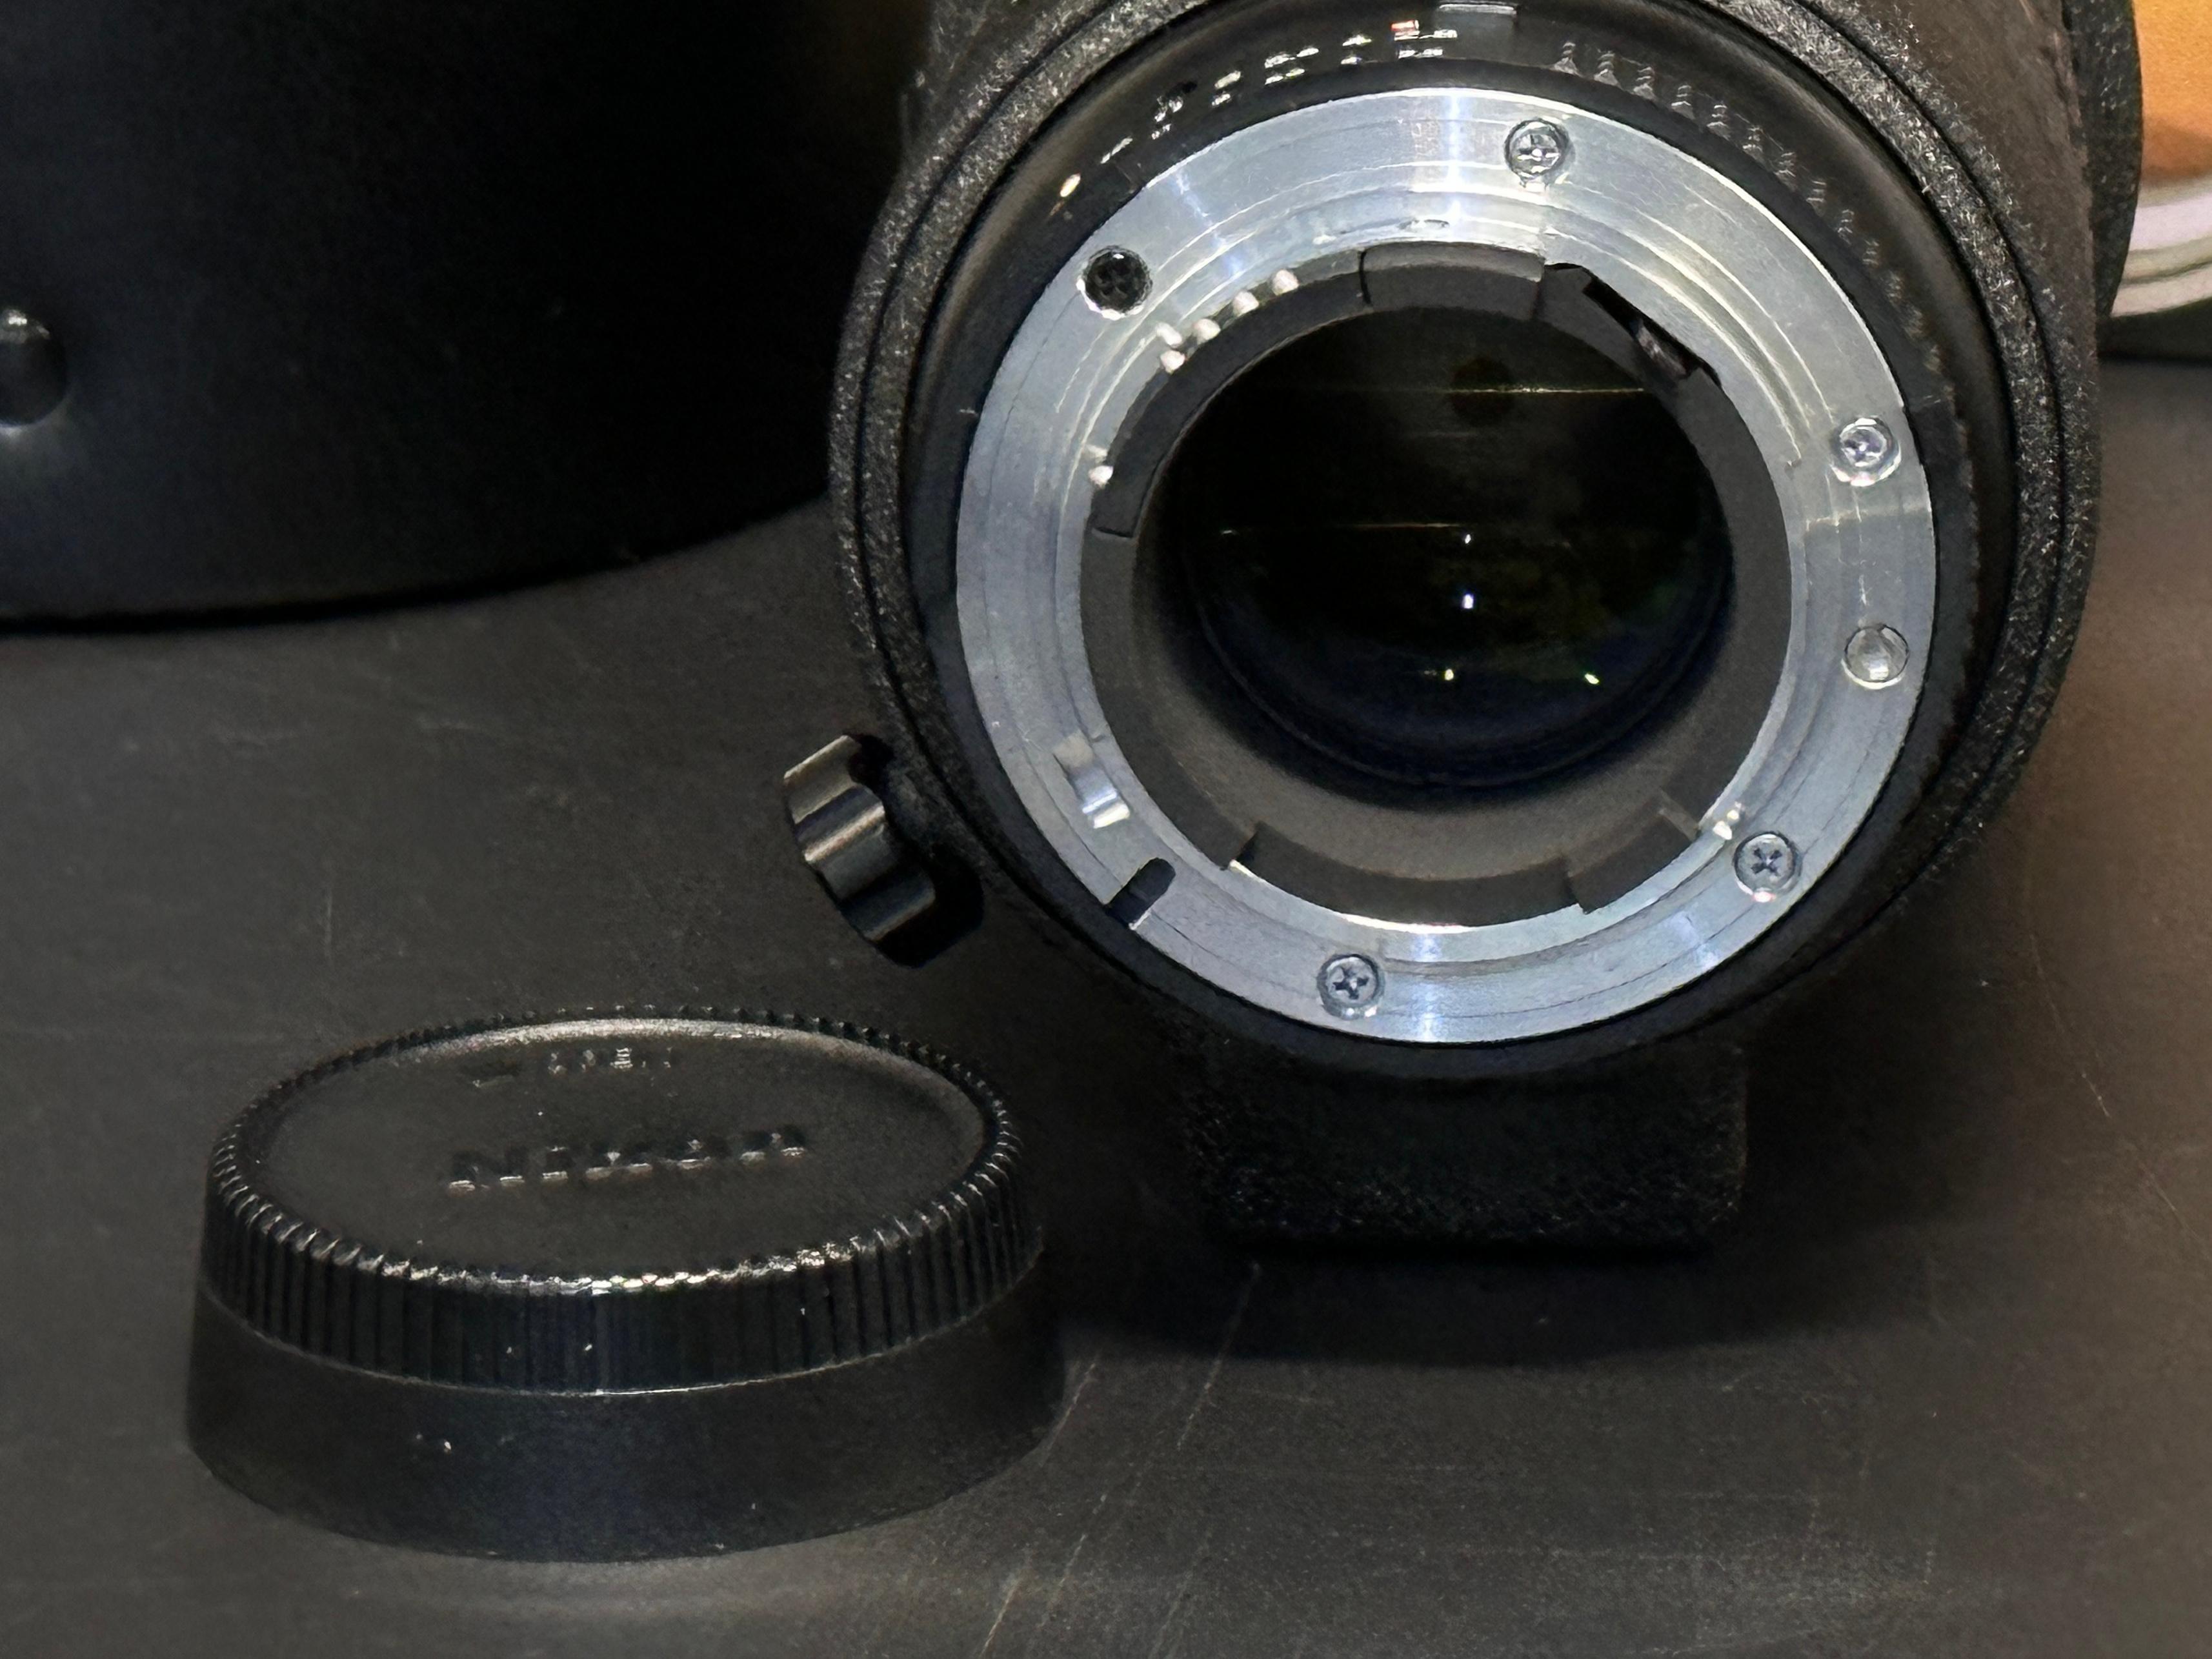 Nikon Nikkor 80-200mm f2.8 ED Lens AF Macro Zoom in Box